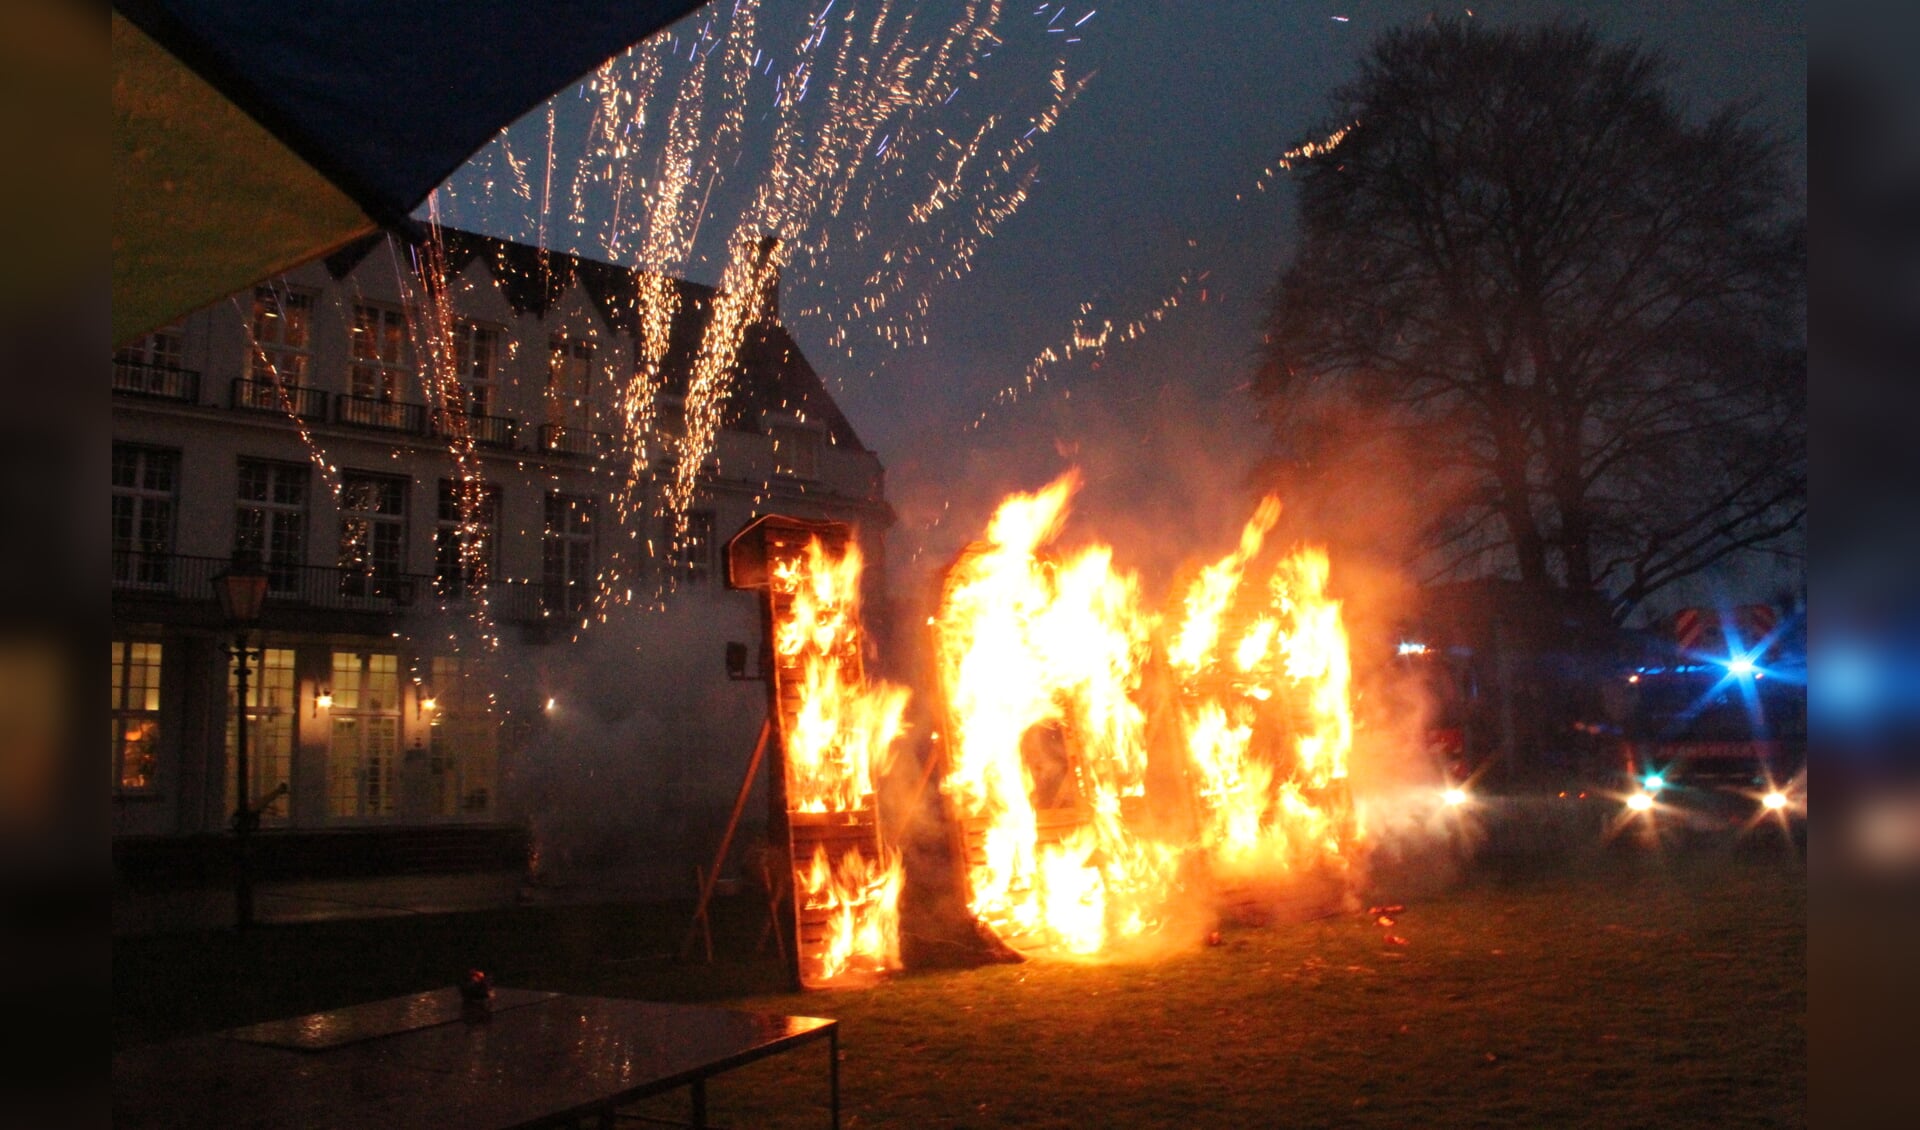 Met hoog oplaaiende vlammen en prachtig vuurwerk werd het jubileumjaar ingezet.